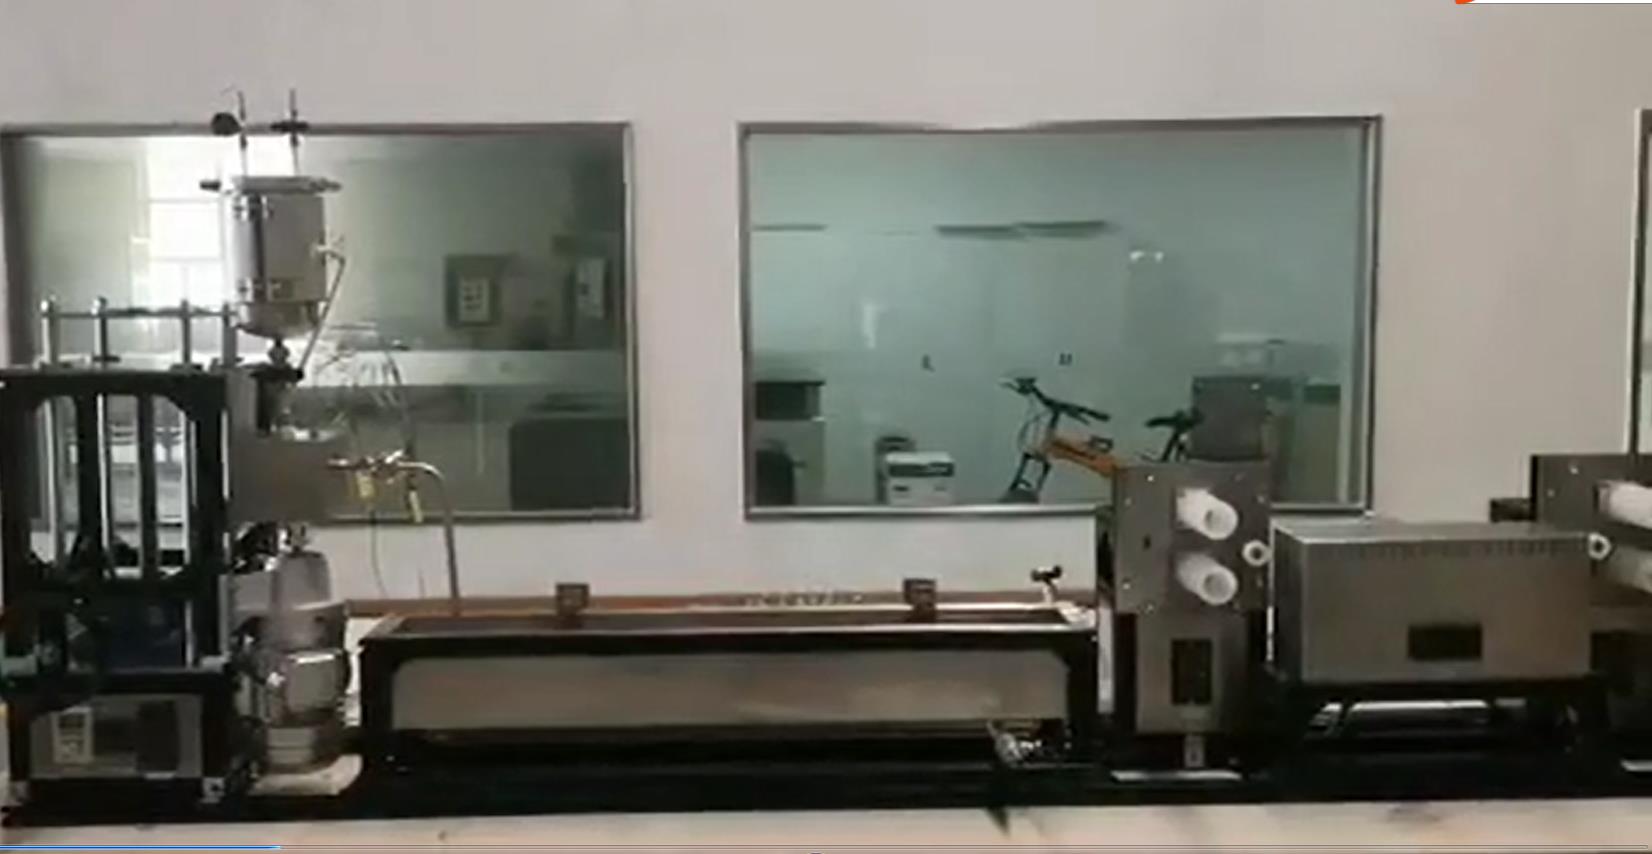 湿法纺丝试验机适用于科研单位研究和教学